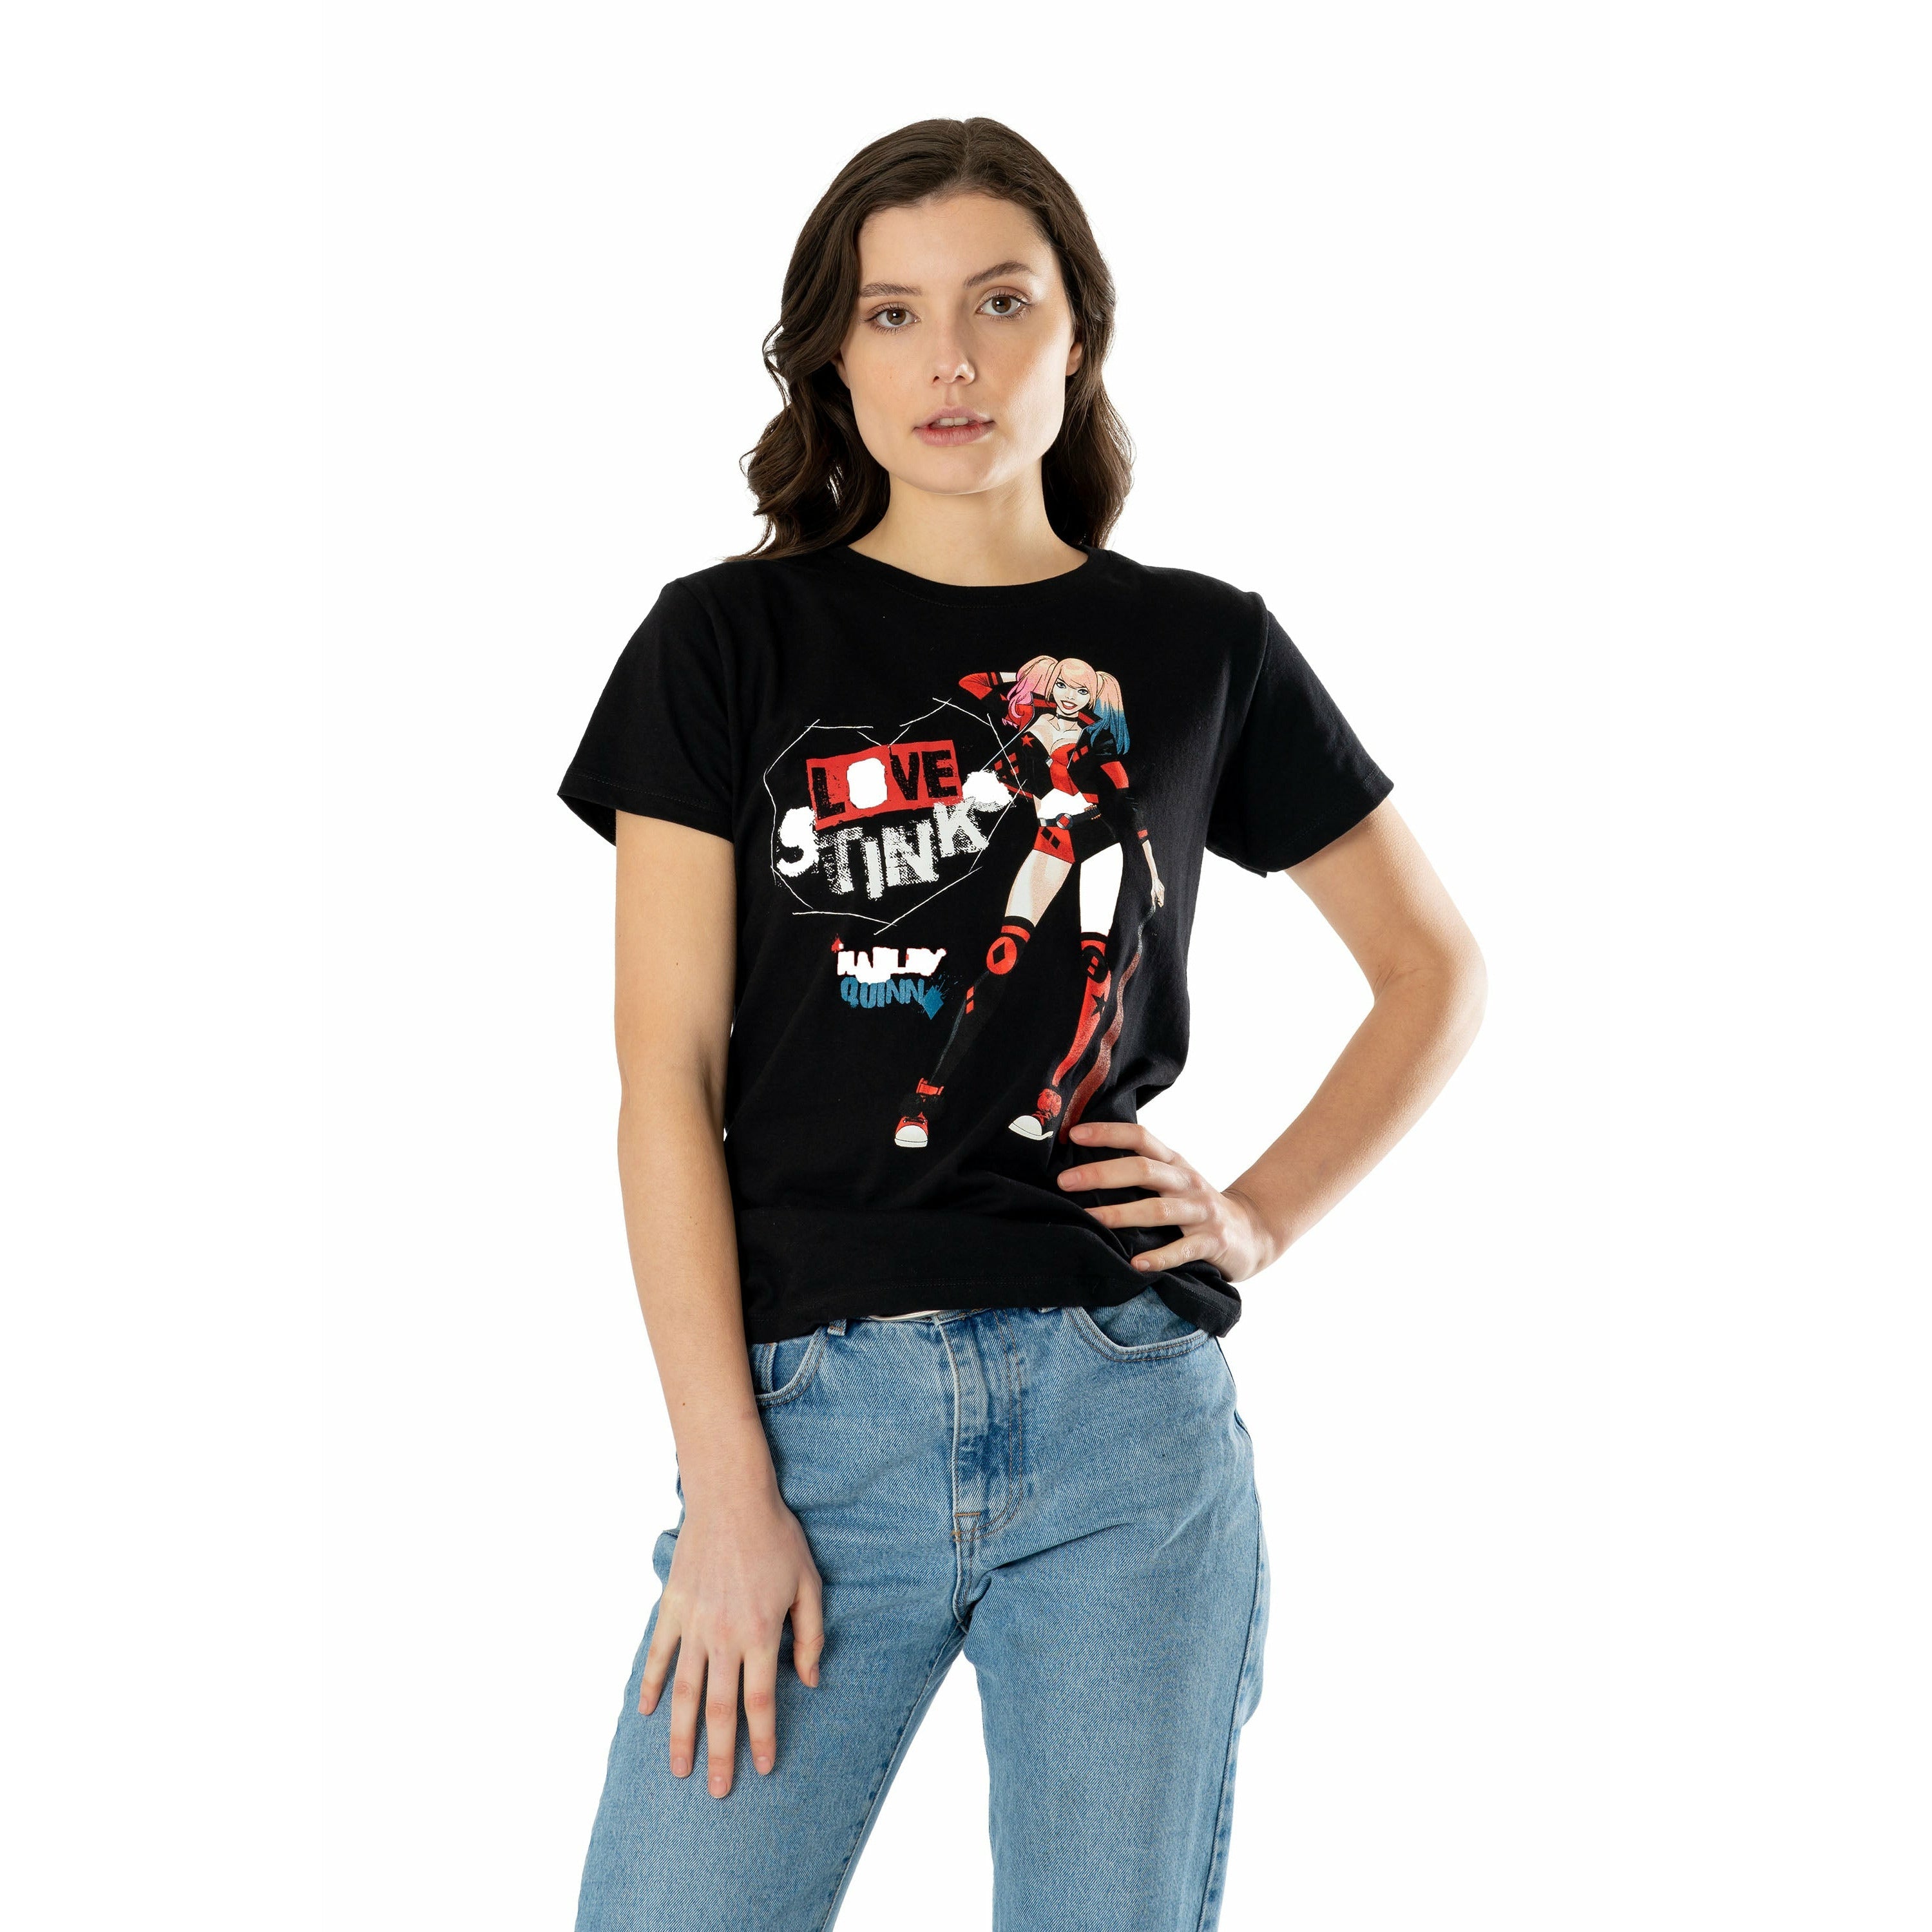 Harley Quinn 'Love Stinks' T-Shirt